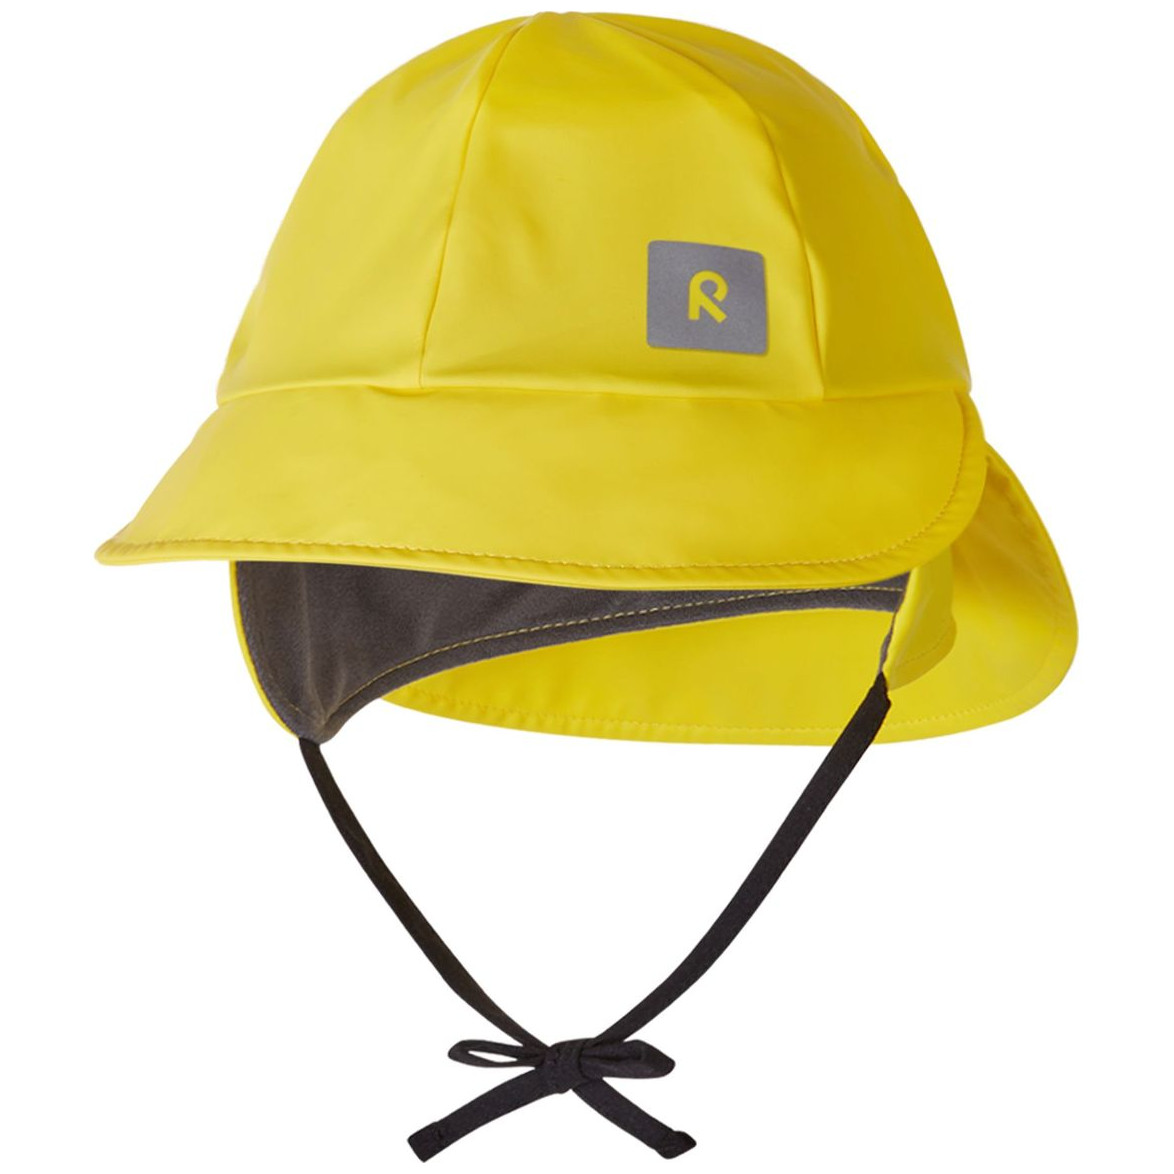 Dětský klobouk Reima Rainy Obvod hlavy: 48 cm / Barva: žlutá